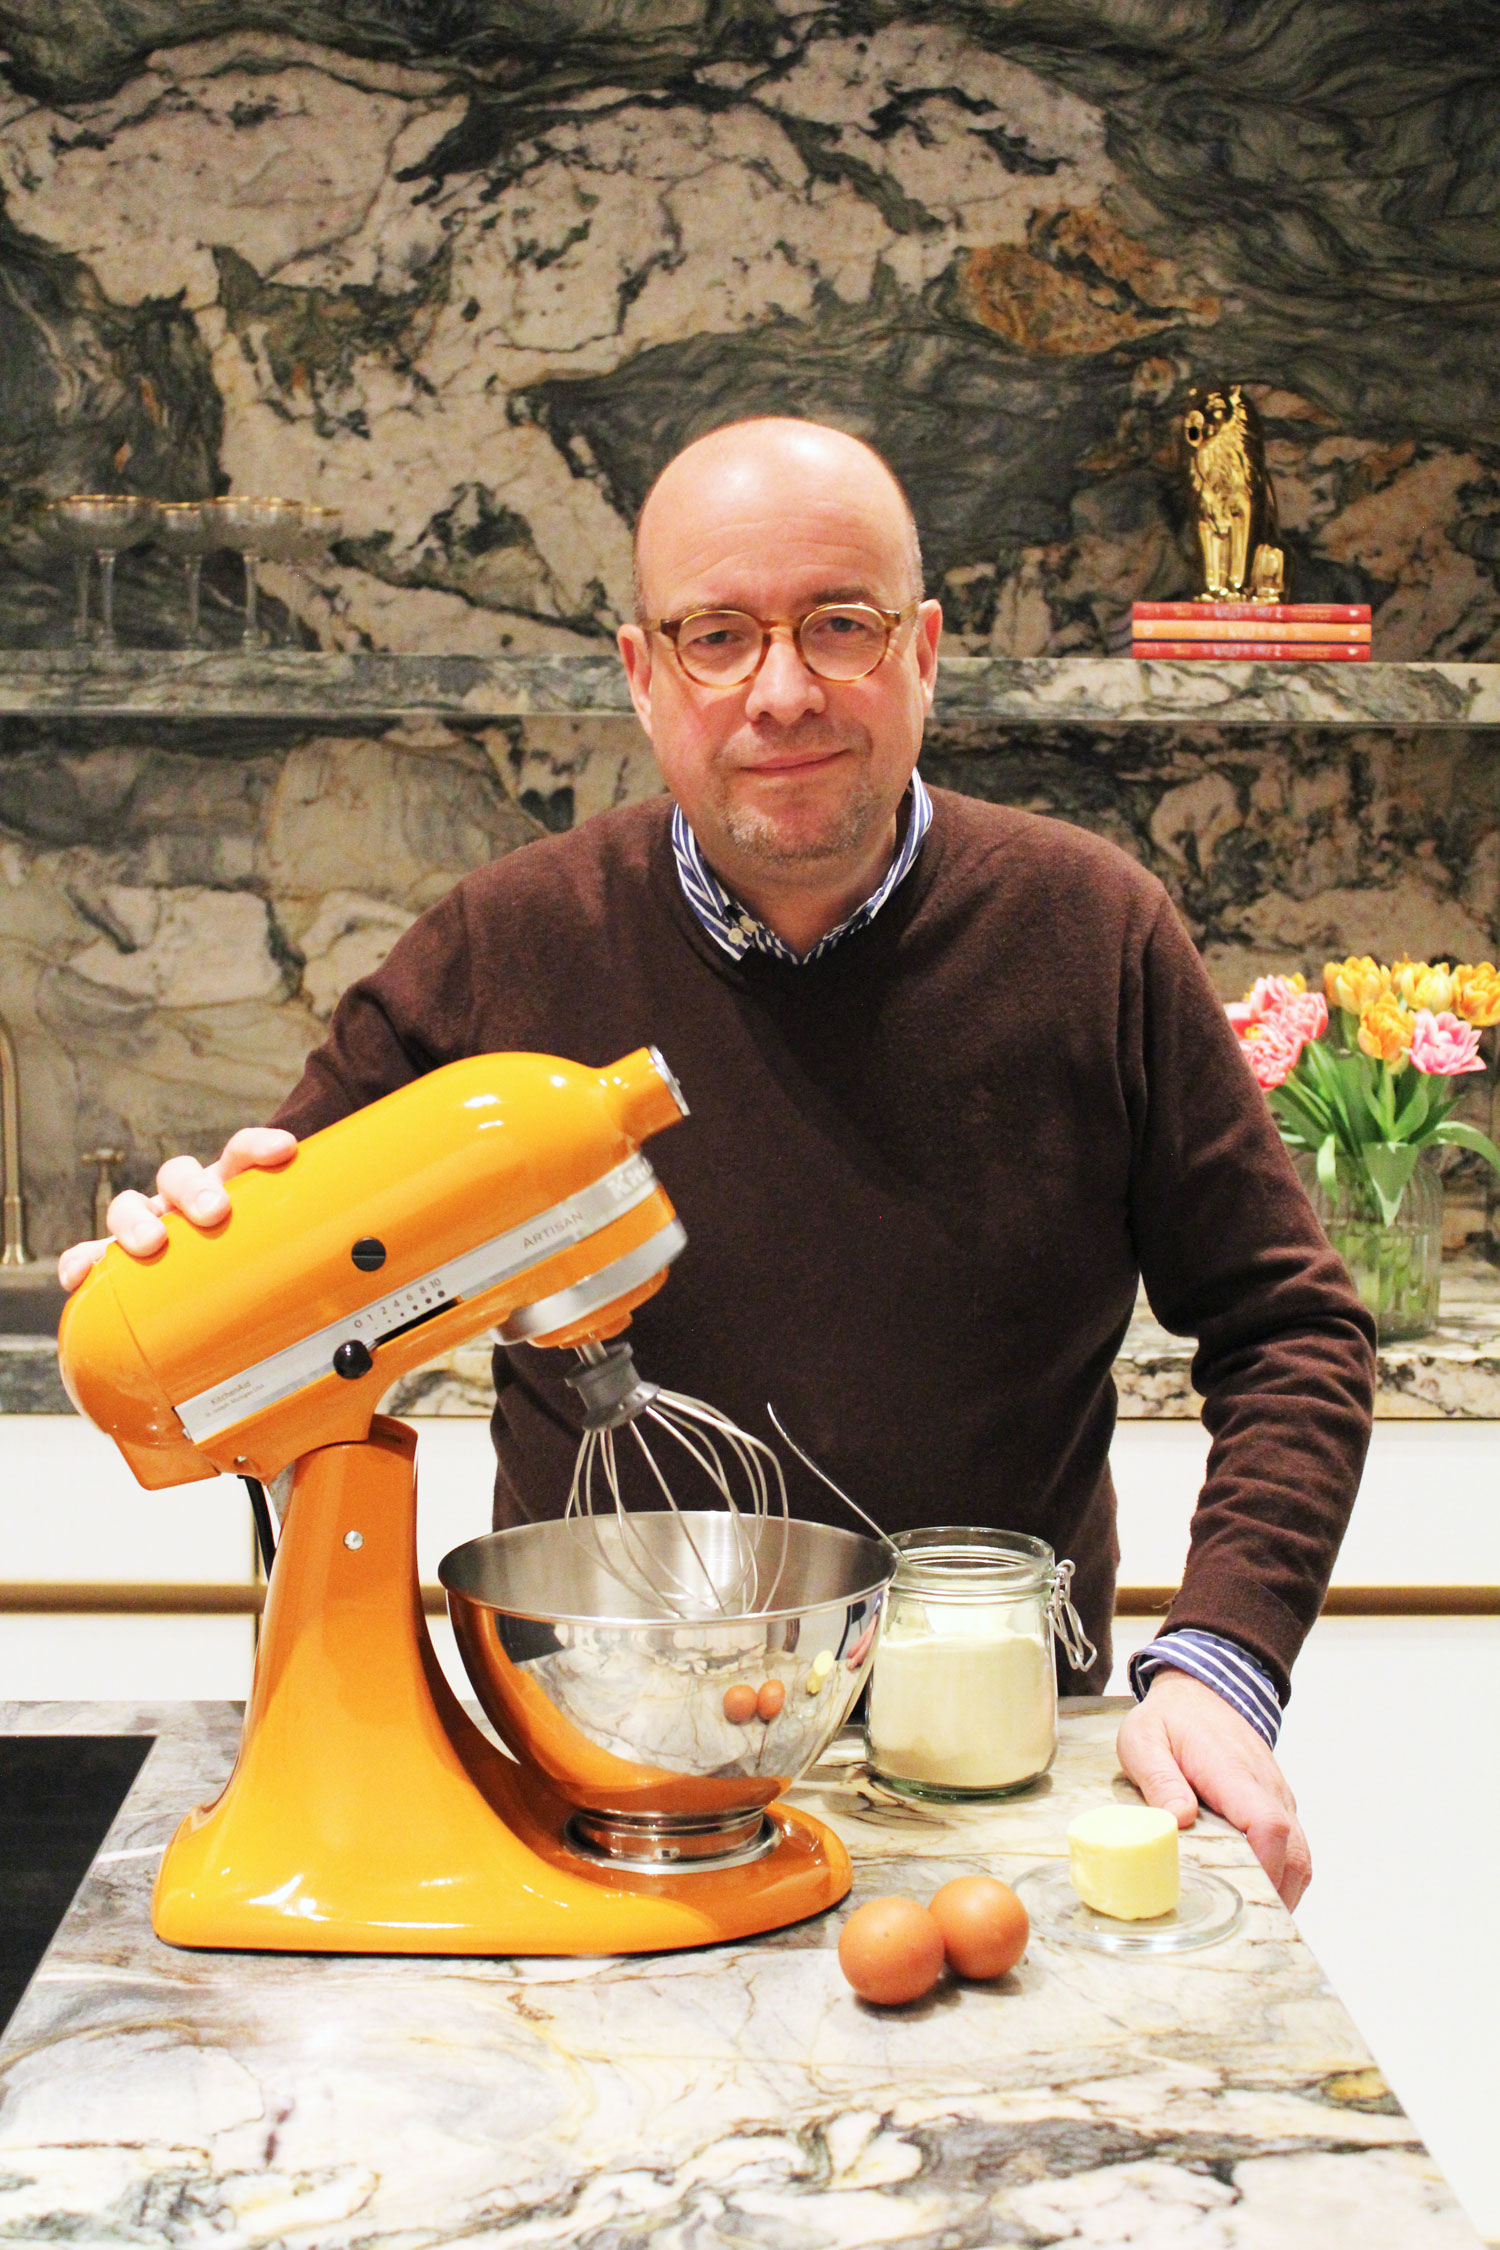 De winnaar van de KitchenAid keukenrobot is bekend... #collab